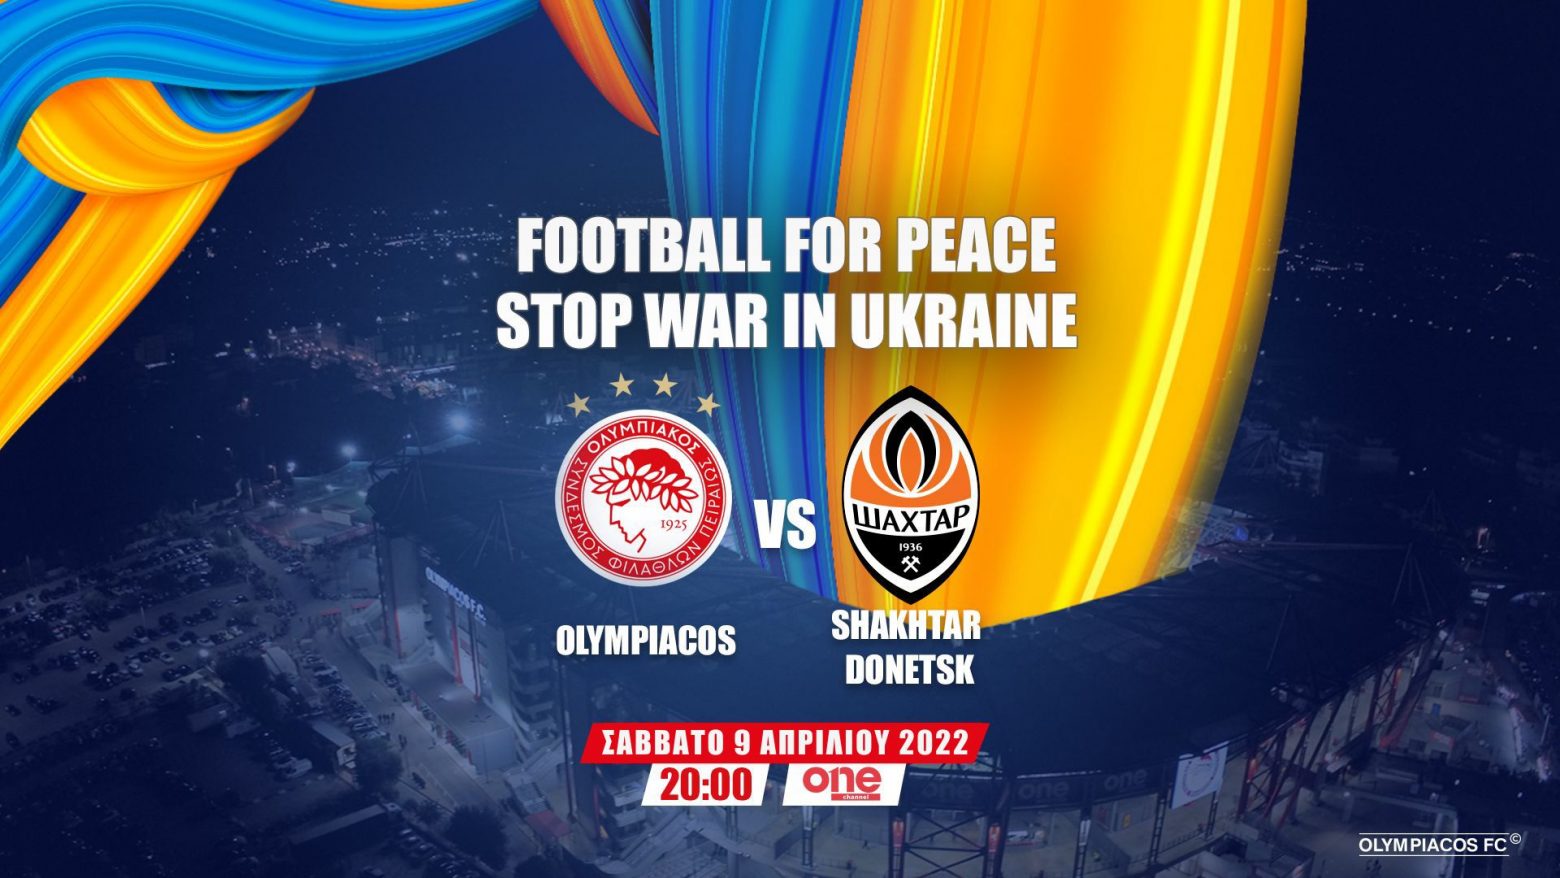 Ζωντανά στο One Channel ο αγώνας για την ειρήνη μεταξύ Ολυμπιακού και Σαχτάρ Ντόνετσκ